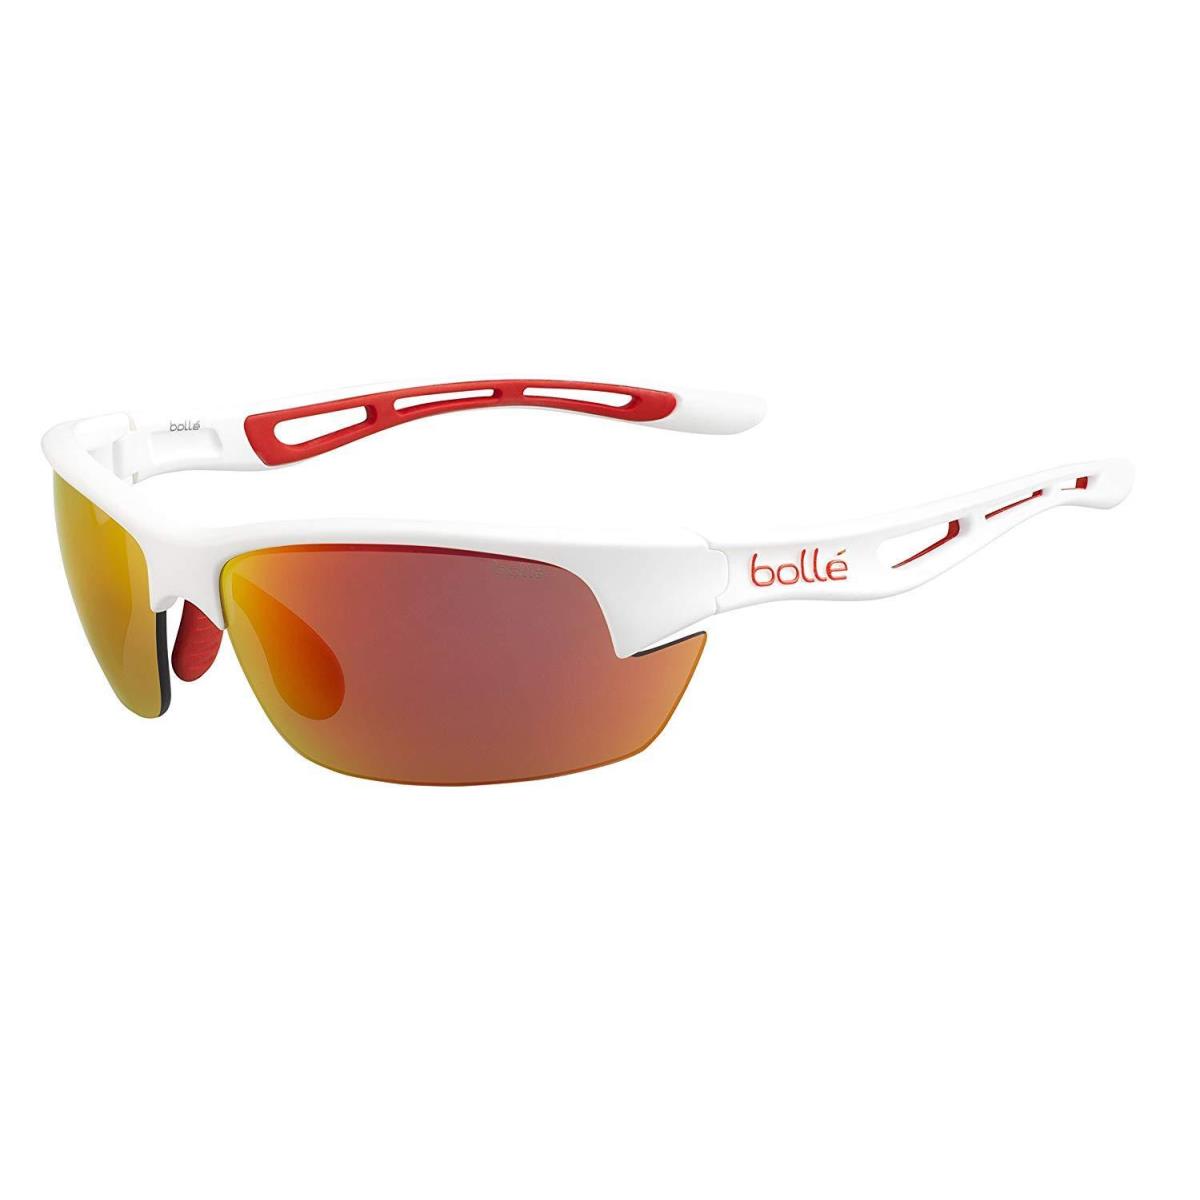 Bolle Bolt S Sunglasses - 12204 - Matte White w/ Fire Oleo/anti-fog Lens - Frame: Matte White, Lens: Gray